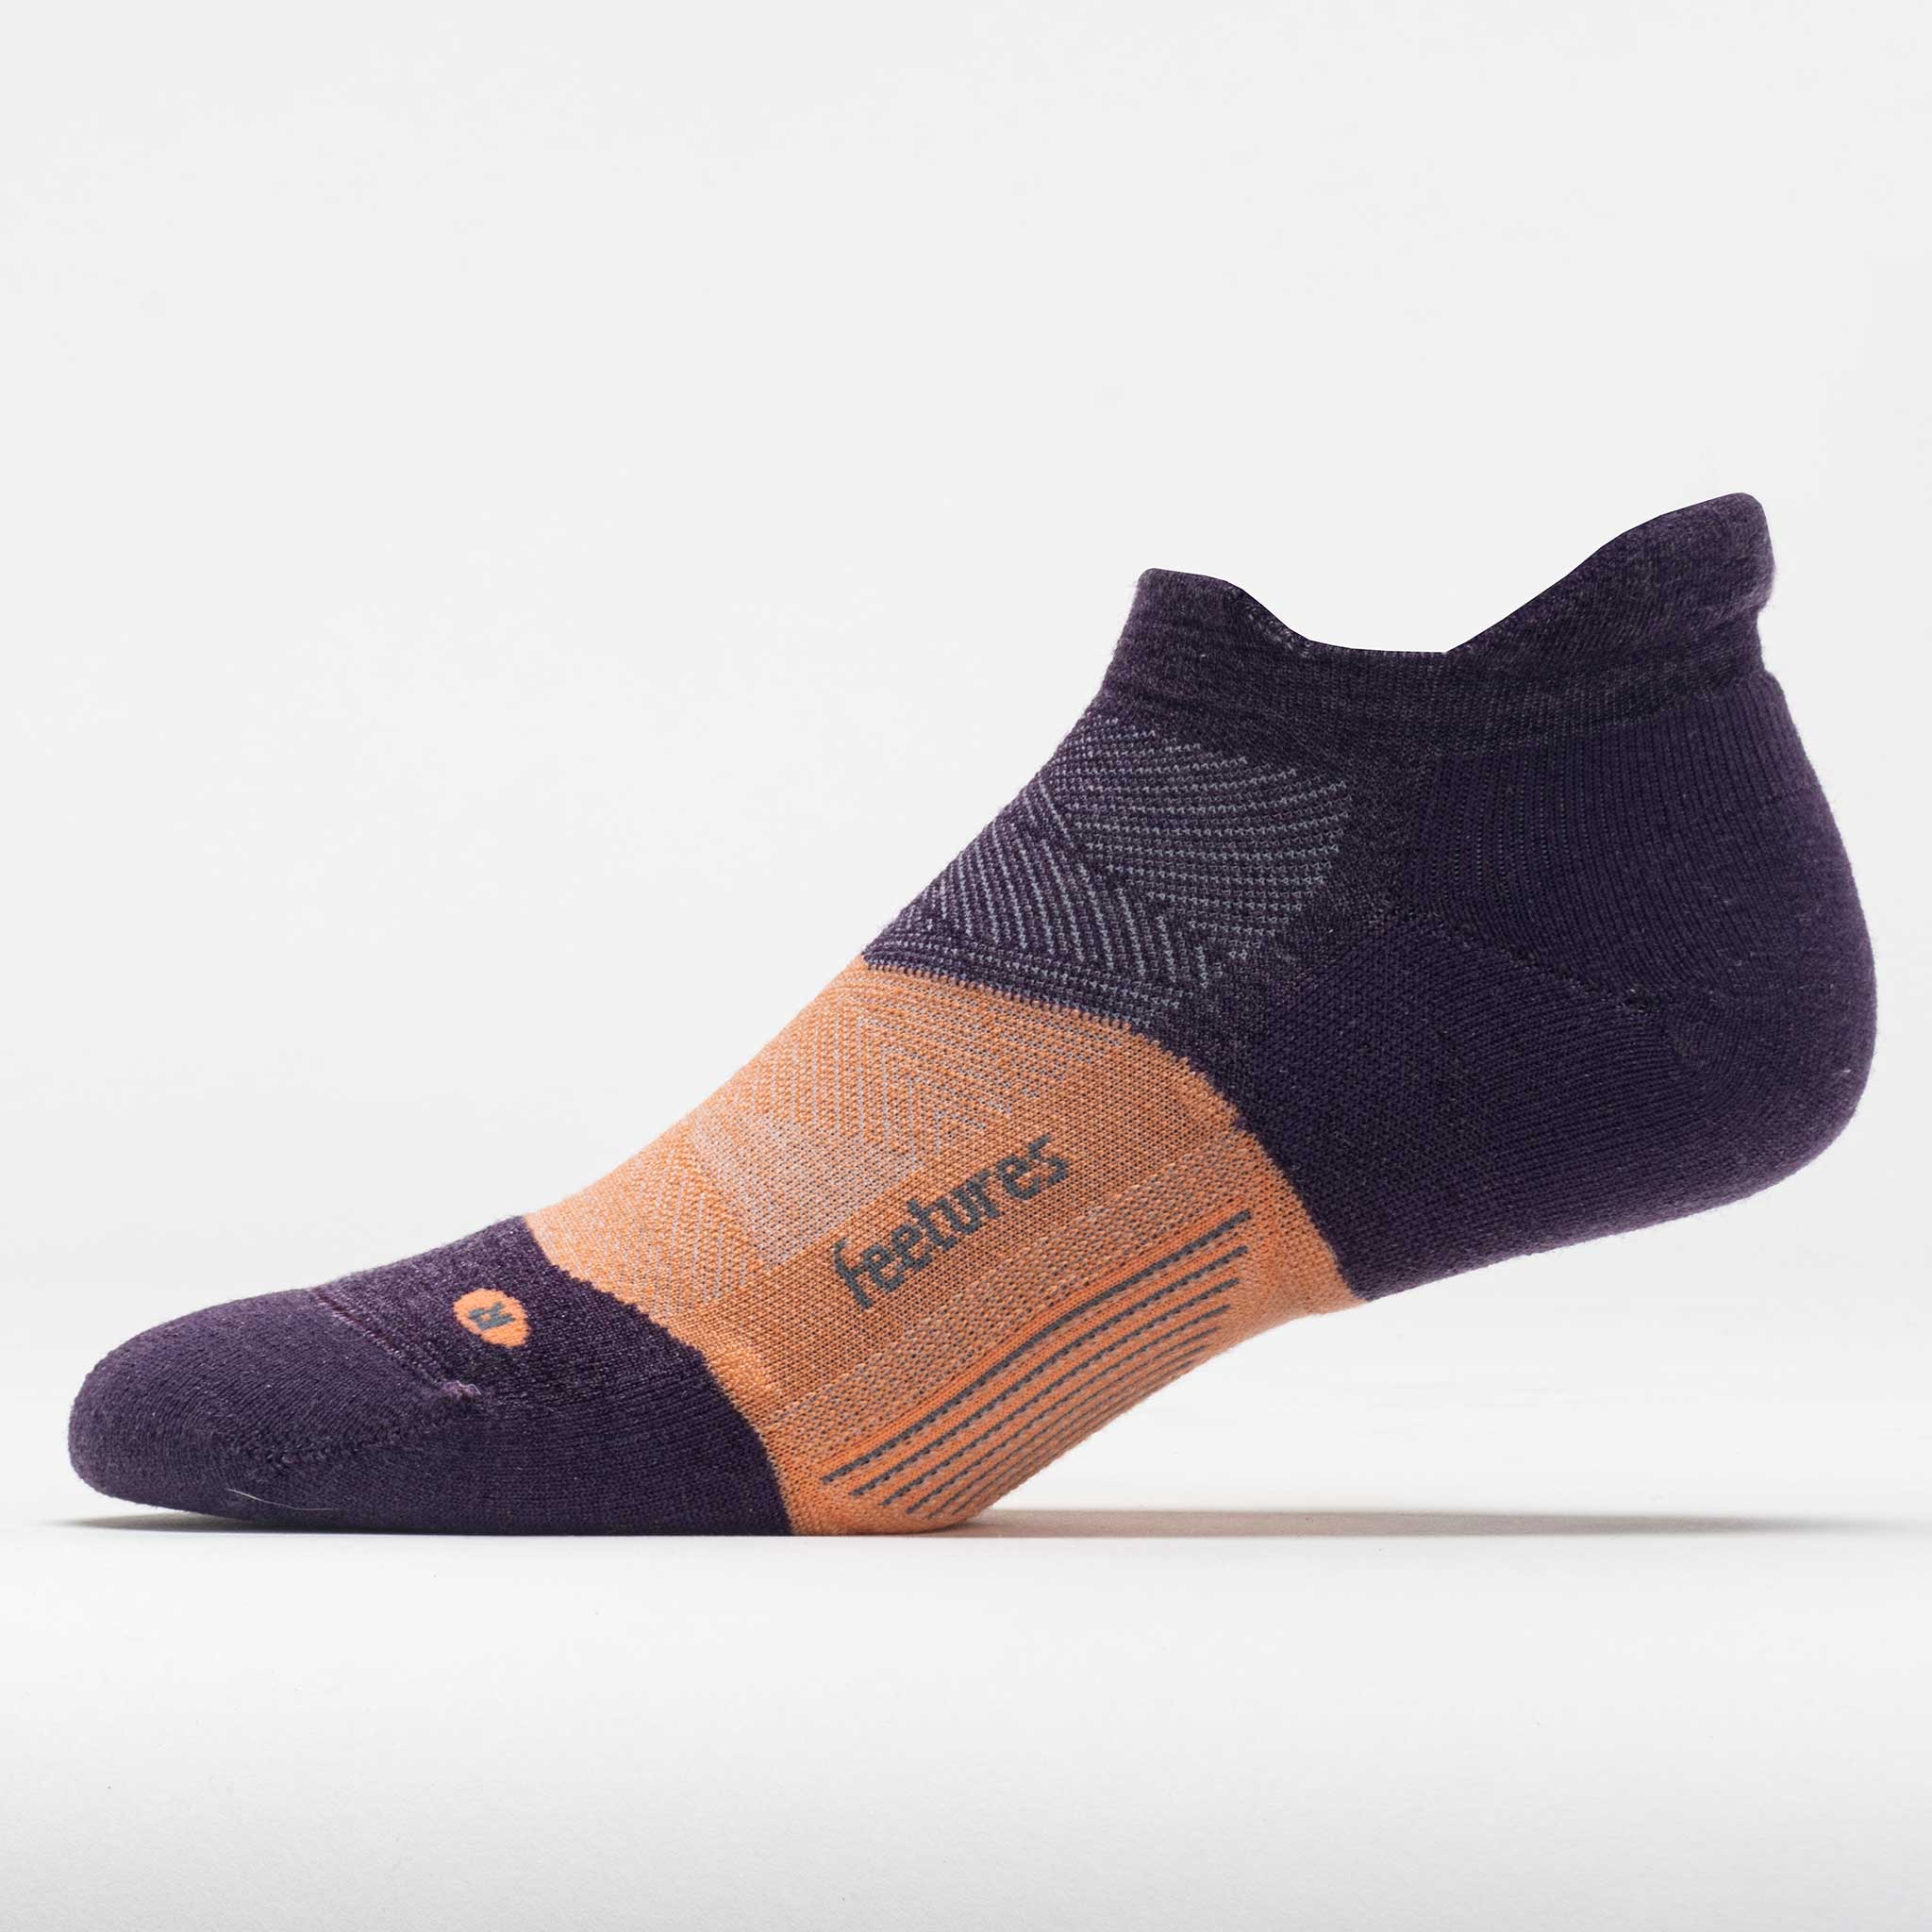 Feetures Merino 10 Cushion No Show Tab Socks